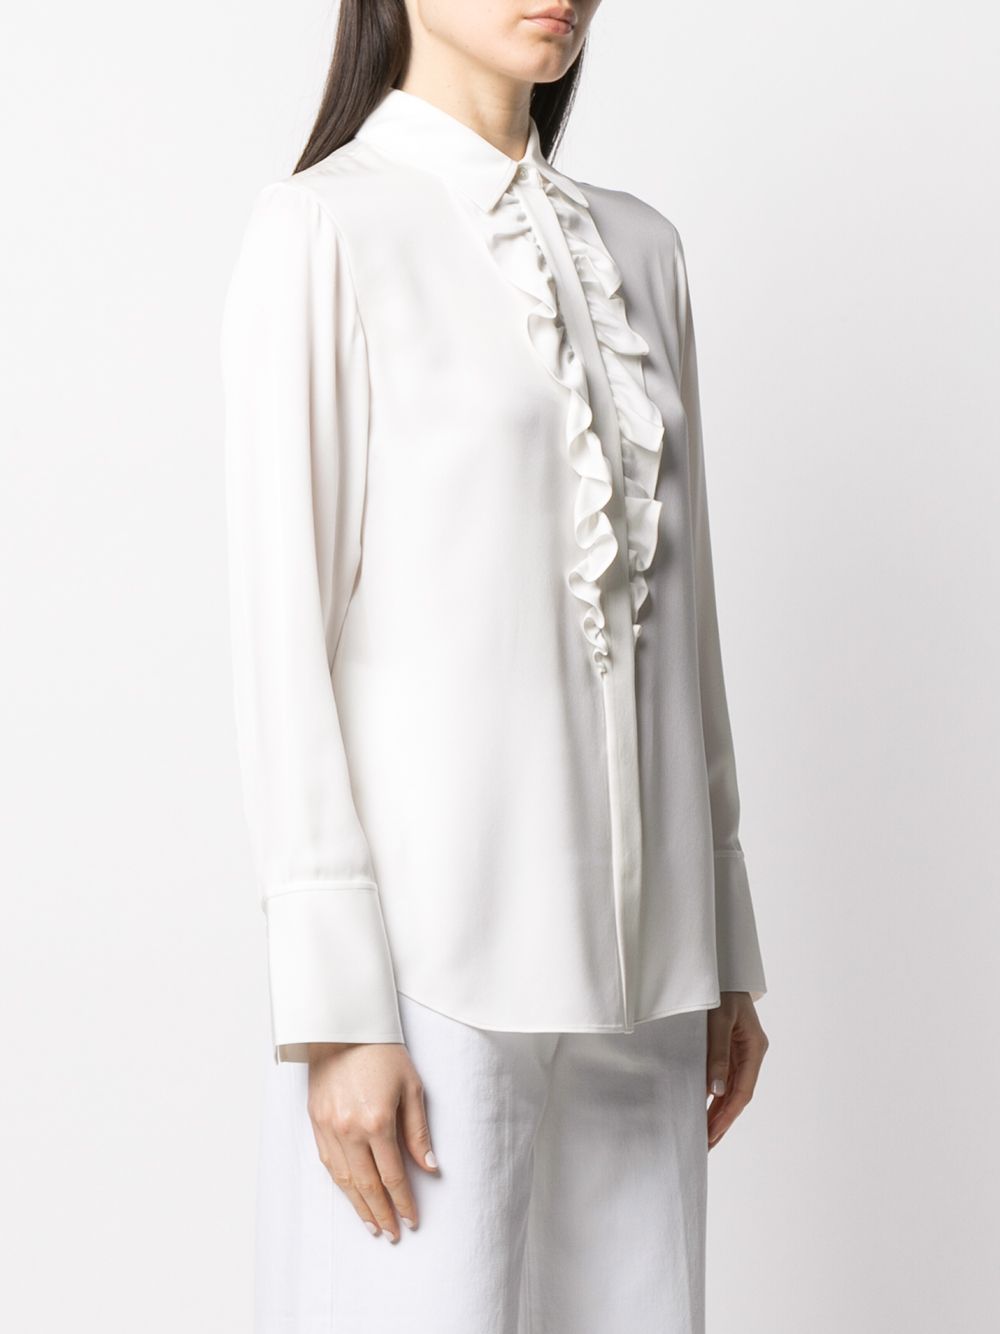 Образ Виктории Бекхэм джинсы клеш блузка белый пиджак. Универсальная комбинация на утро день и вечер.